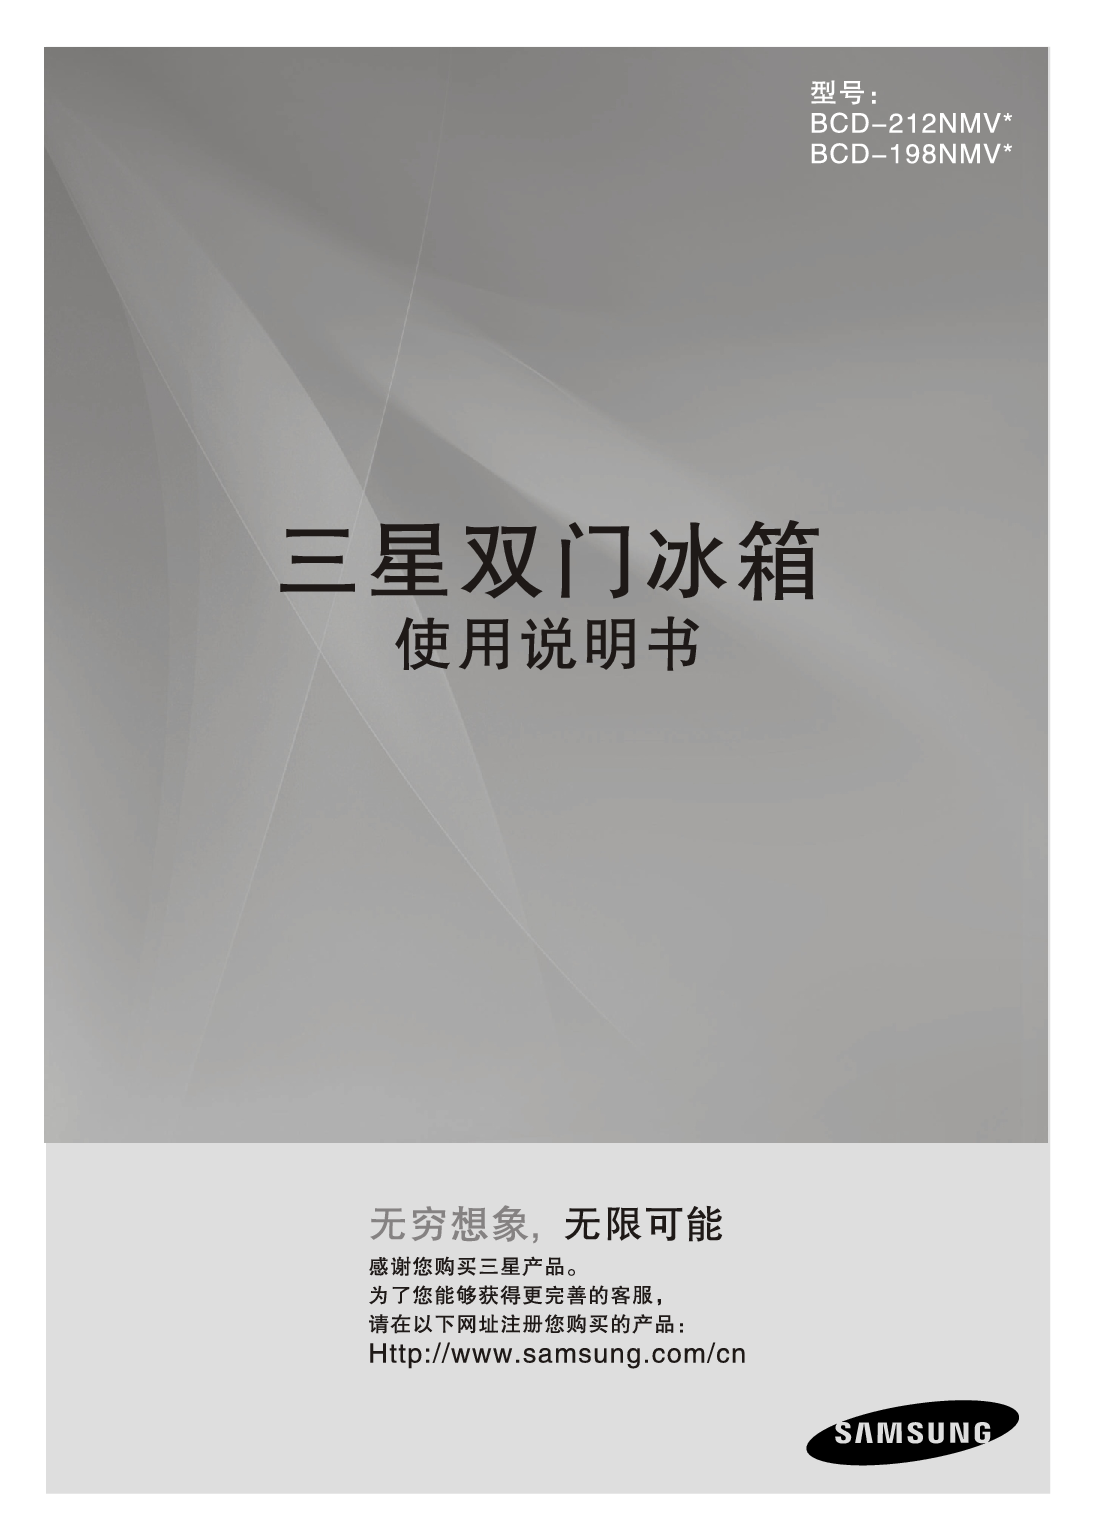 三星 Samsung BCD-198NMV* 使用说明书 封面